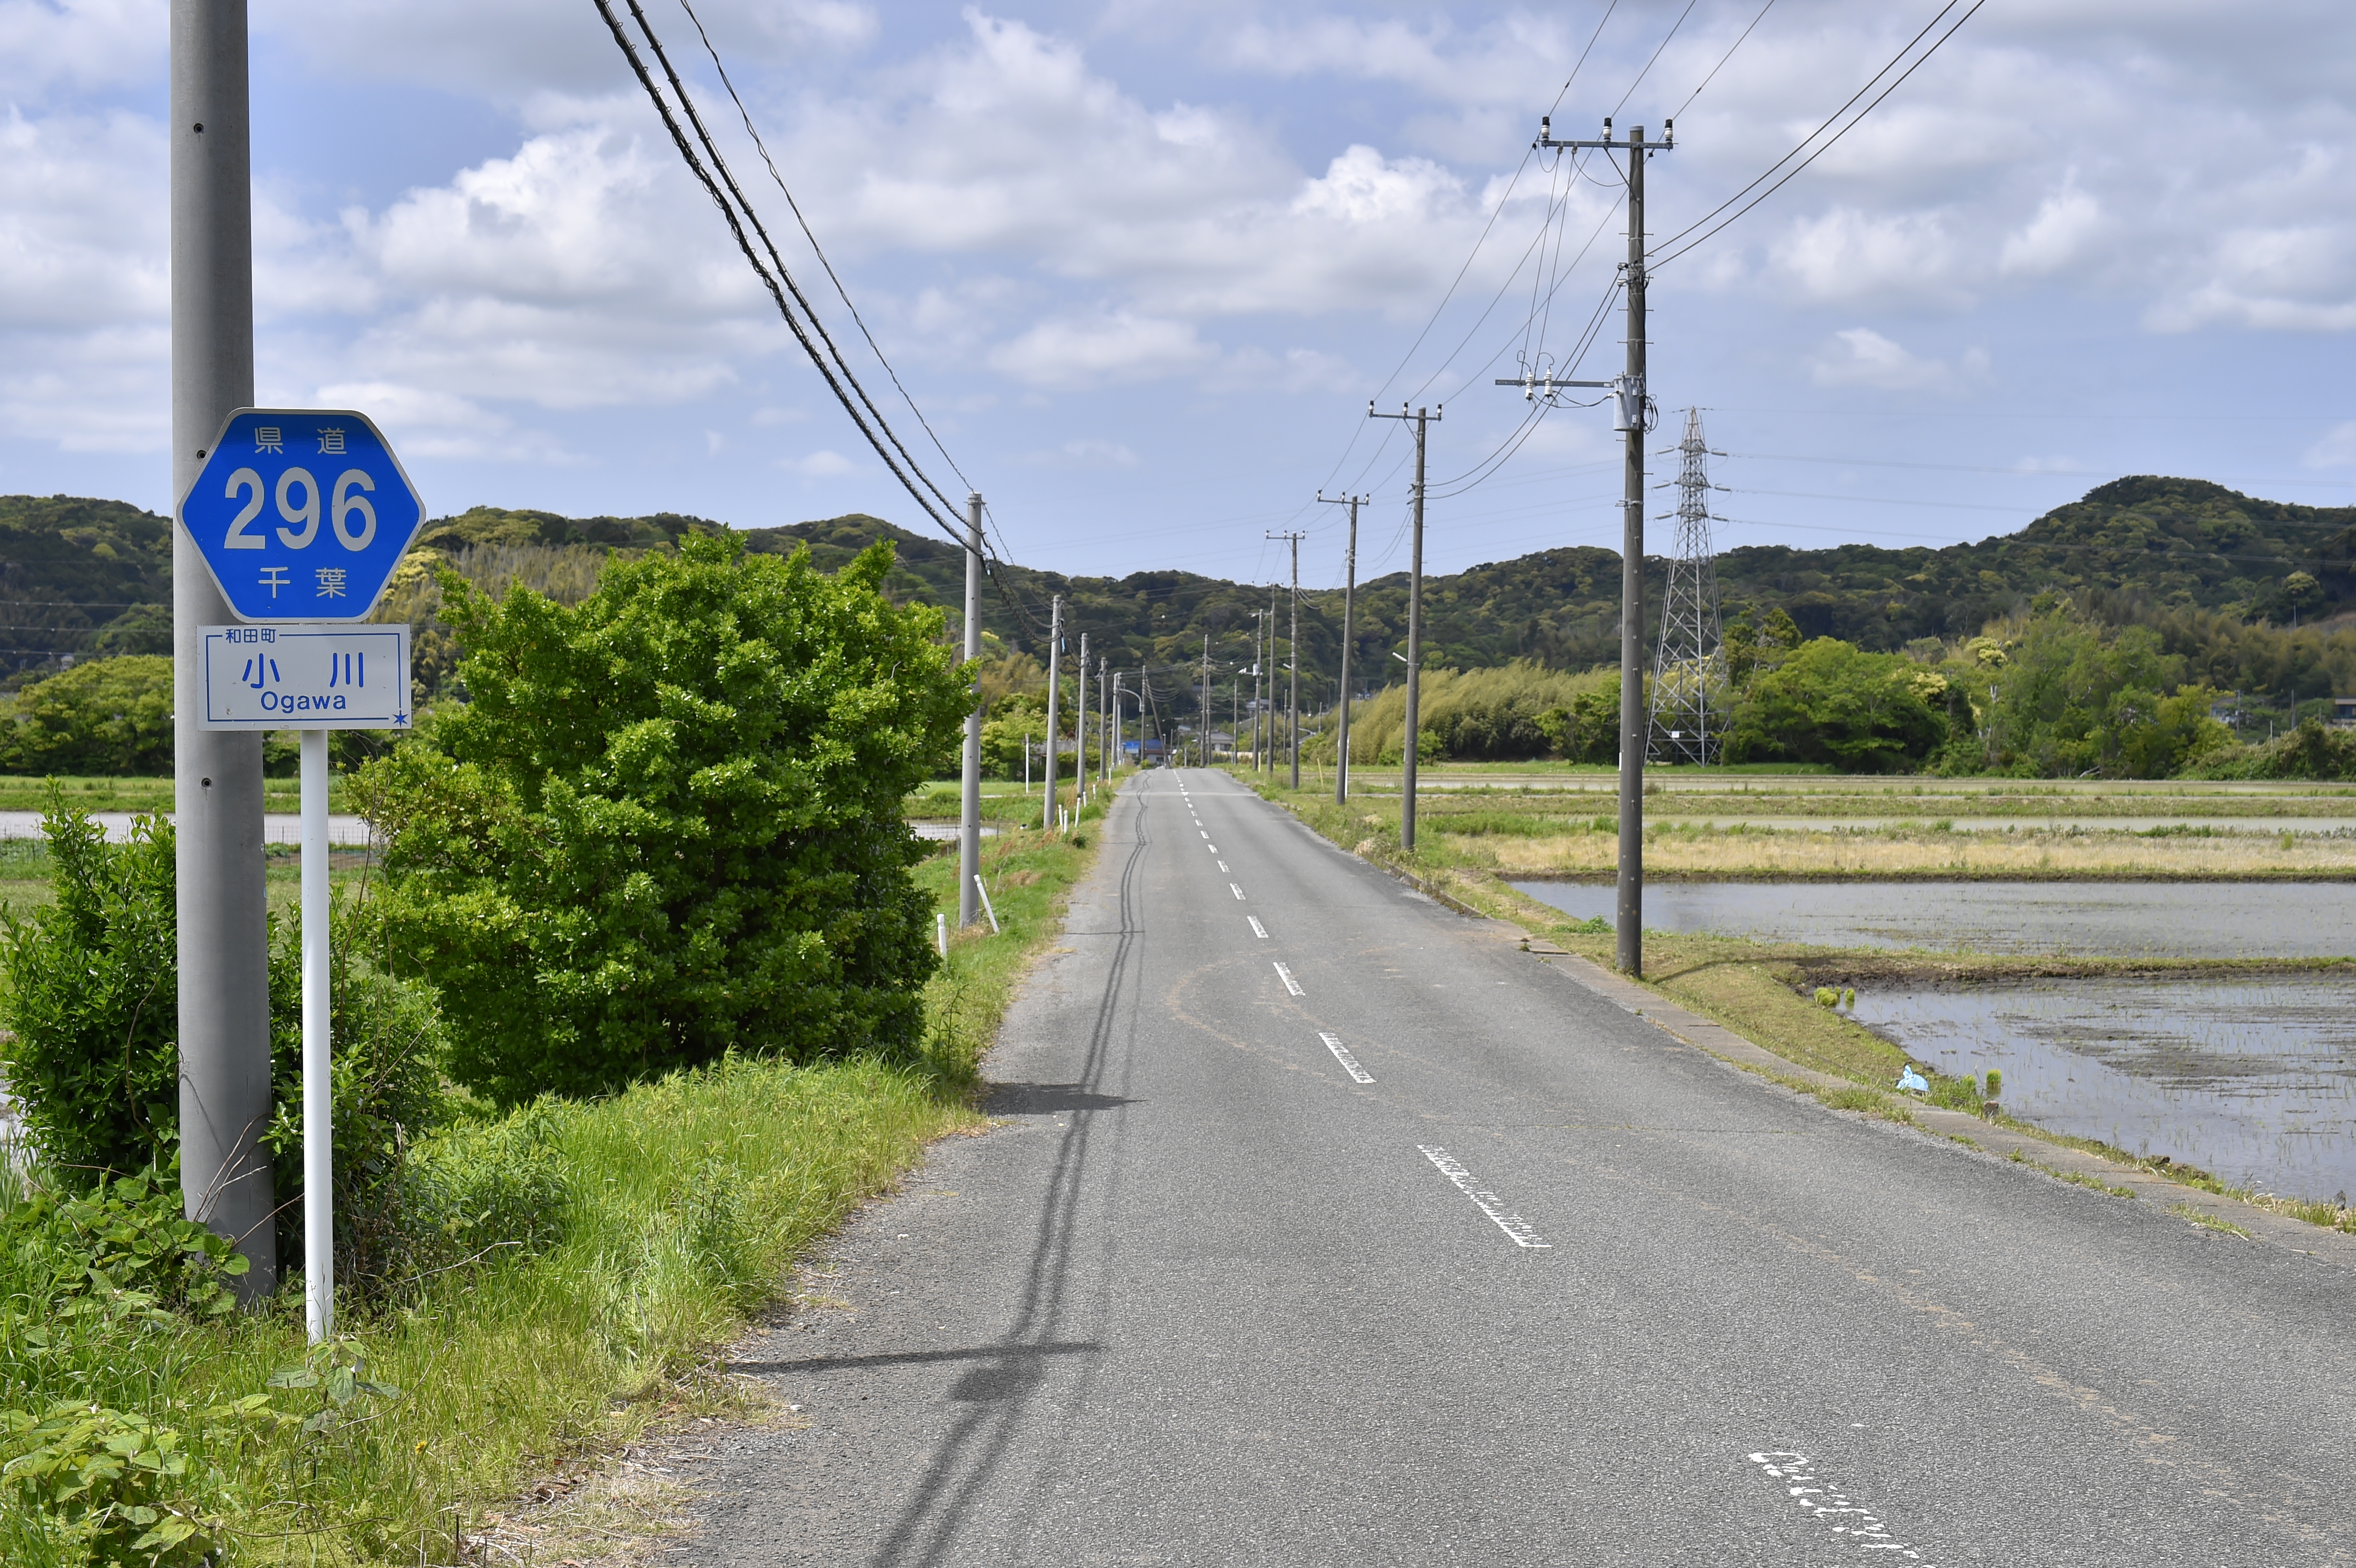 千葉県道296号和田丸山館山線 - Wikipedia